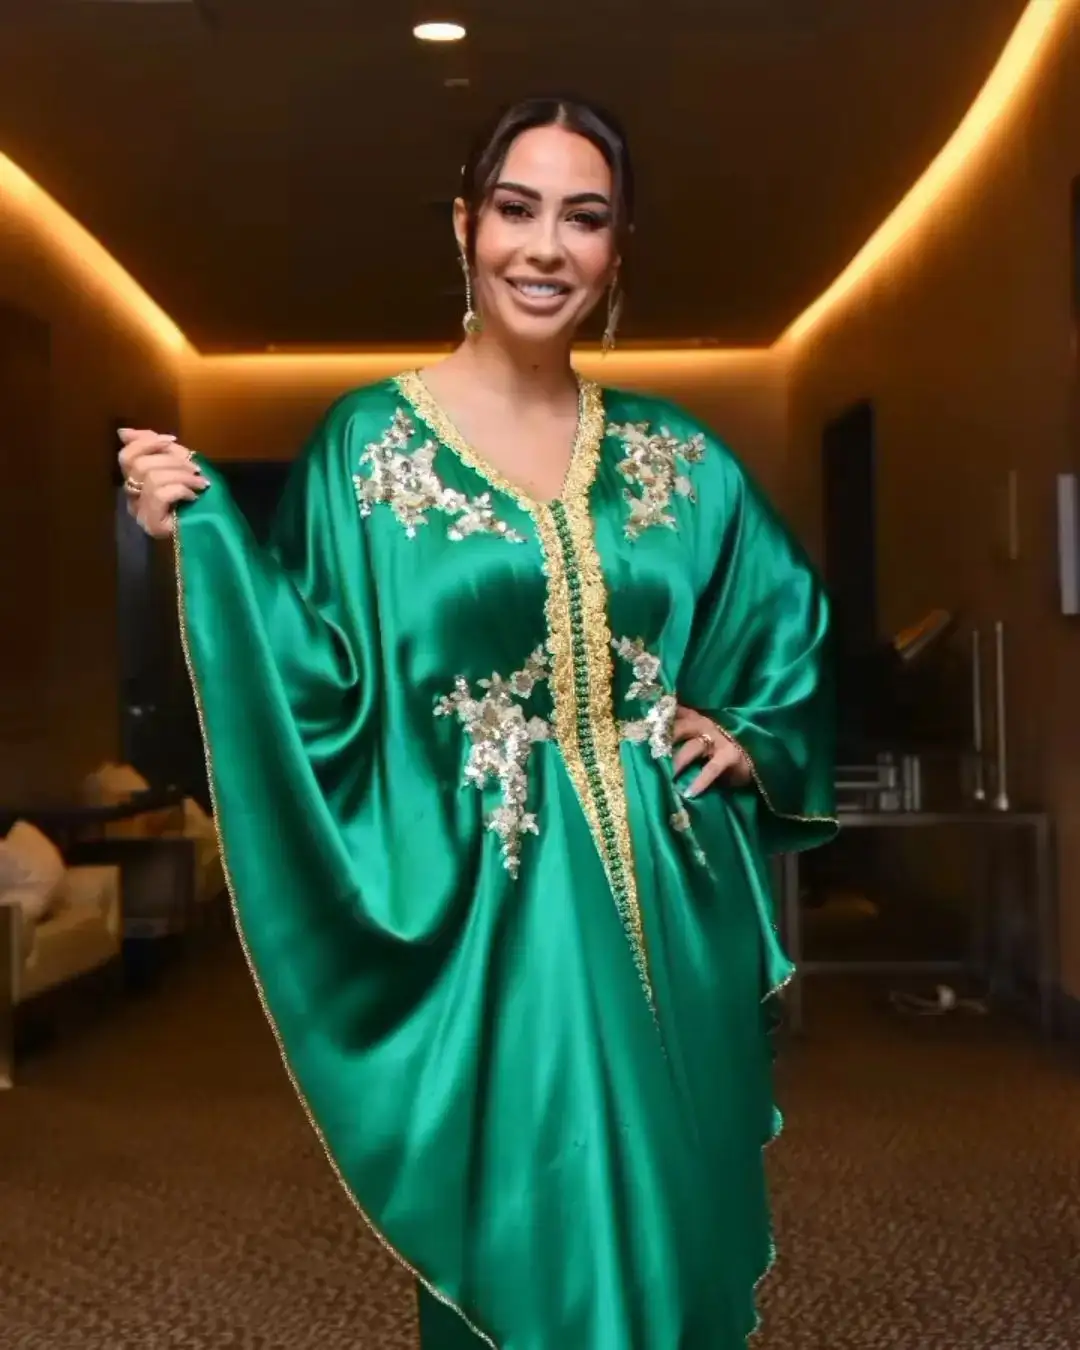 Yeşil ipek saten kelebek maxi altın gümüş iş arap kız kadın için parti ve doğum günü elbise için çok benzersiz bir görünüm